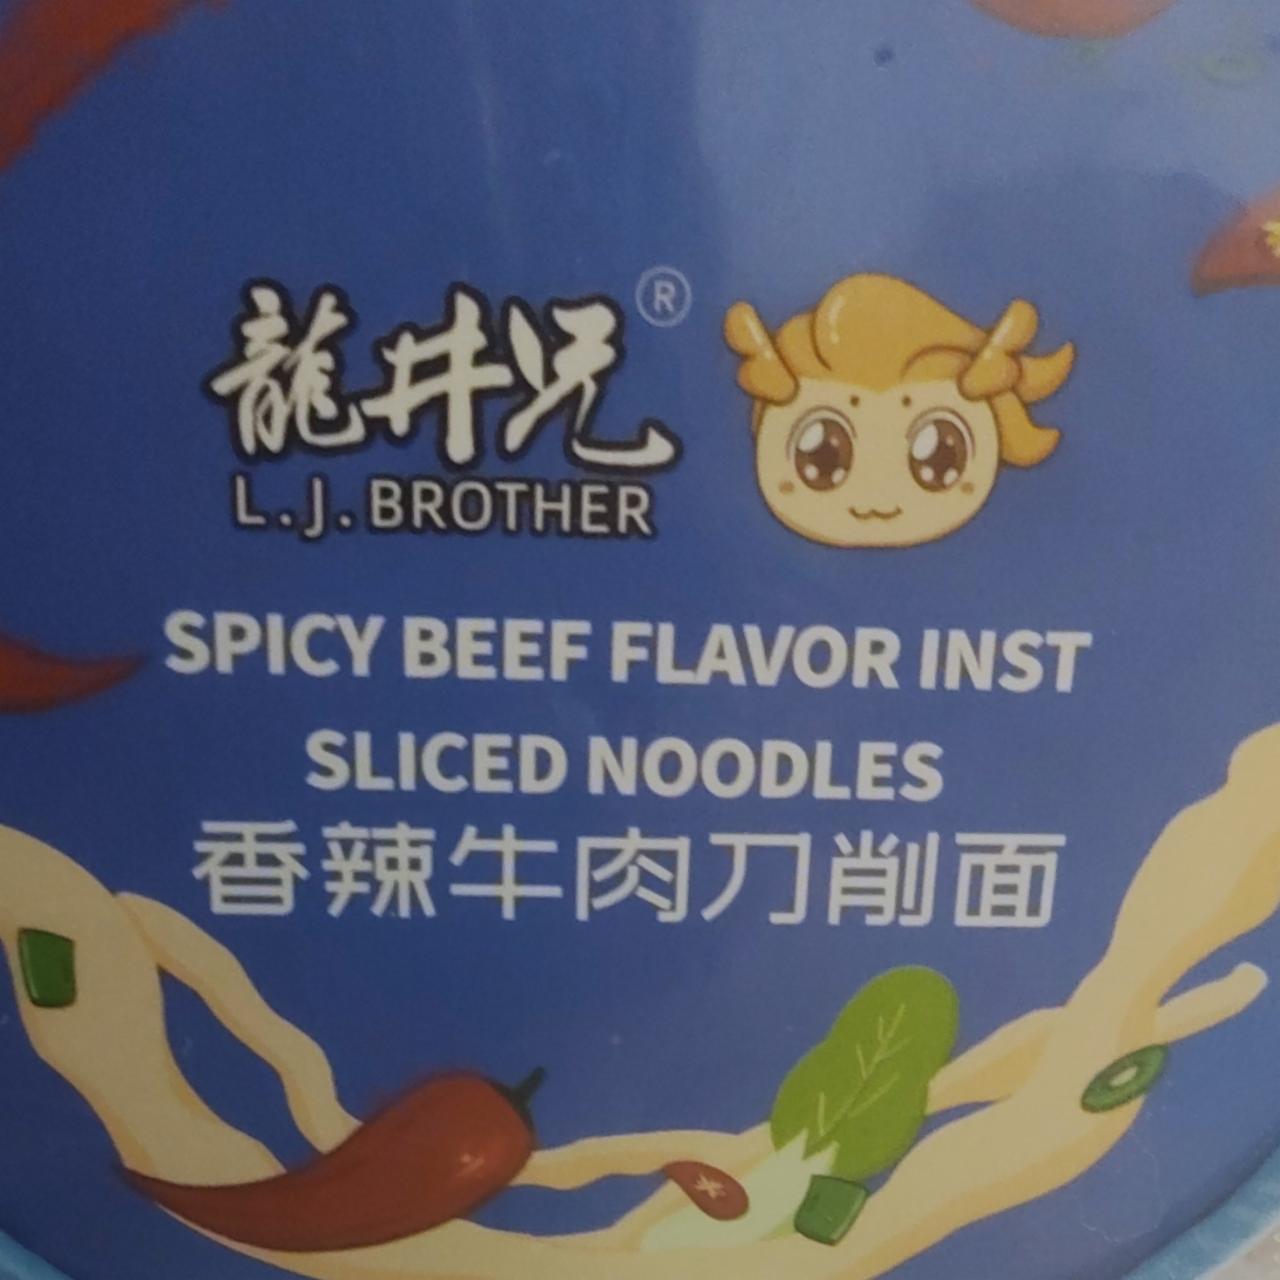 Fotografie - Spicy Beef Flavor Inst Sliced Noodles L.J.Brother